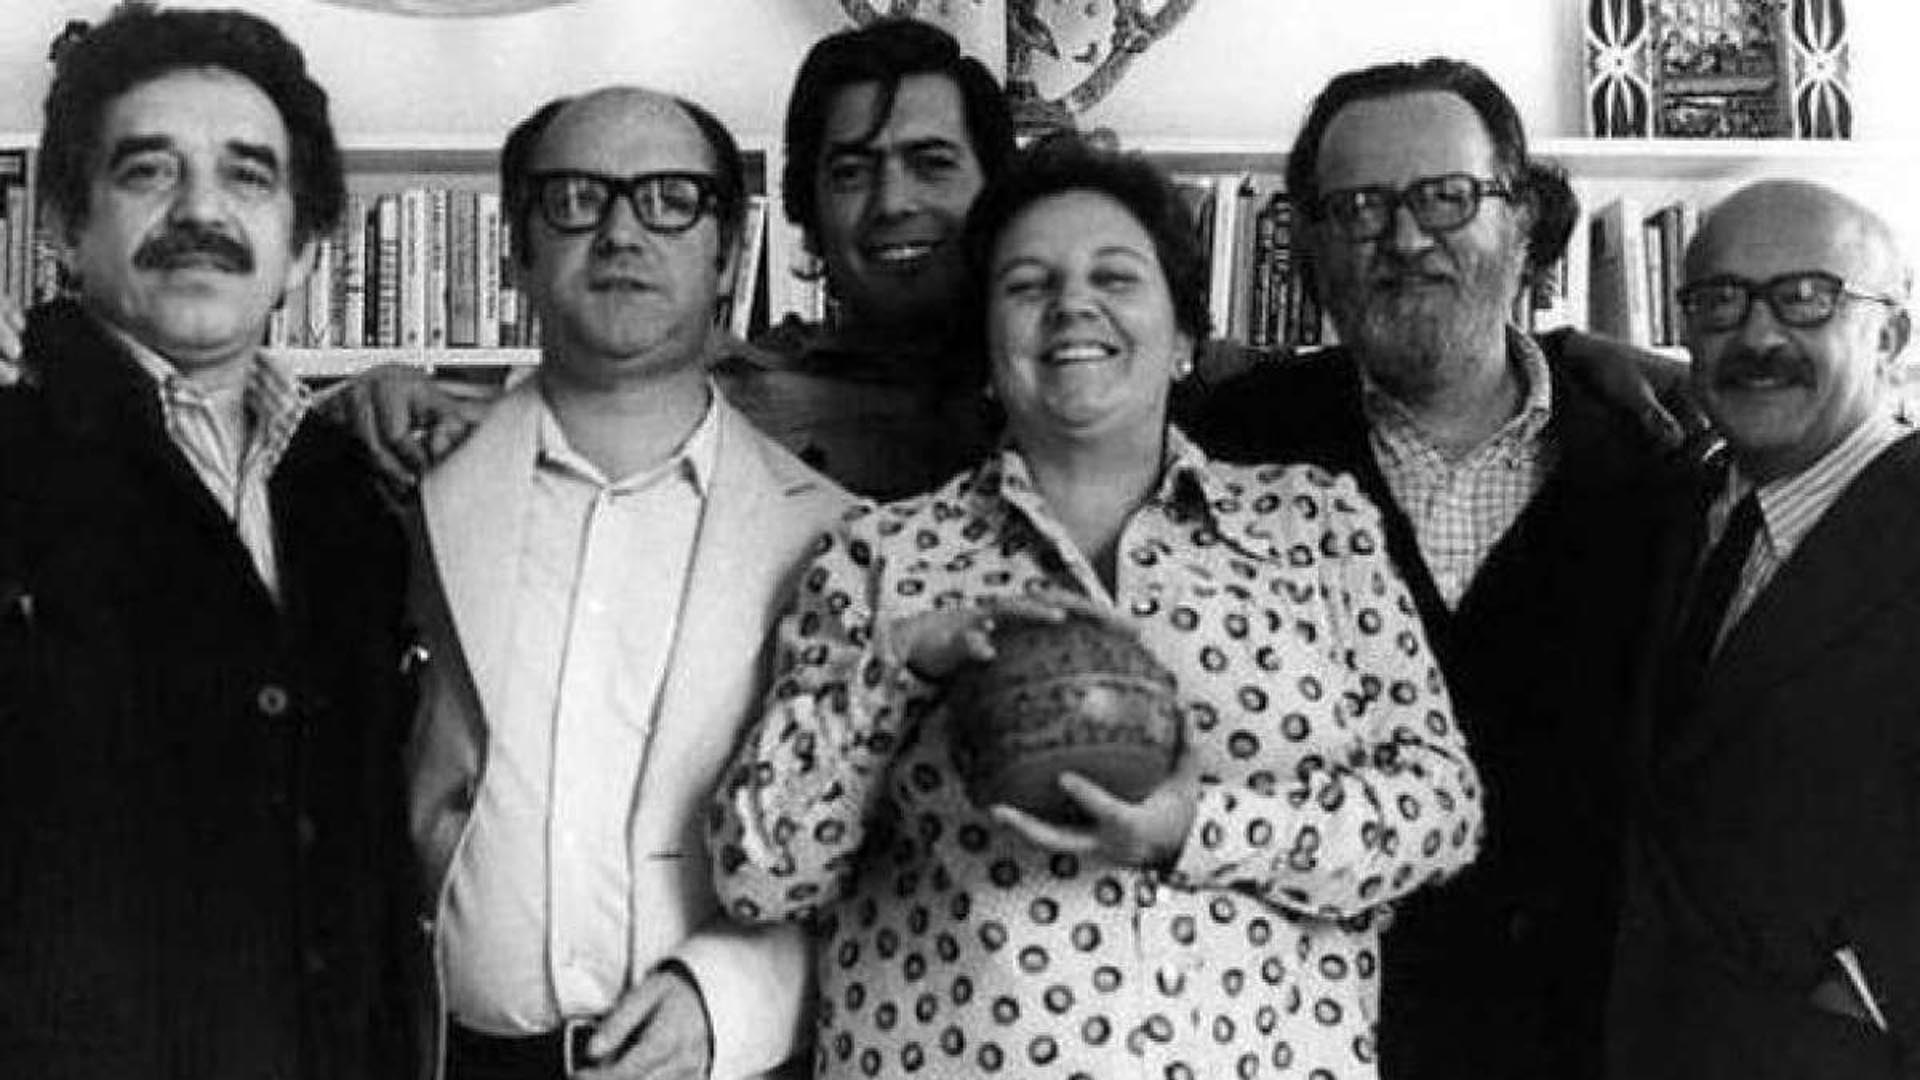 La agente literaria Carmen Balcells posa sonriente con García Márquez, Jorge Edwards, Vargas Llosa, José Donoso y el guionista español Ricardo Muñoz Suay. Faltan Julio Cortázar y Carlos Fuentes